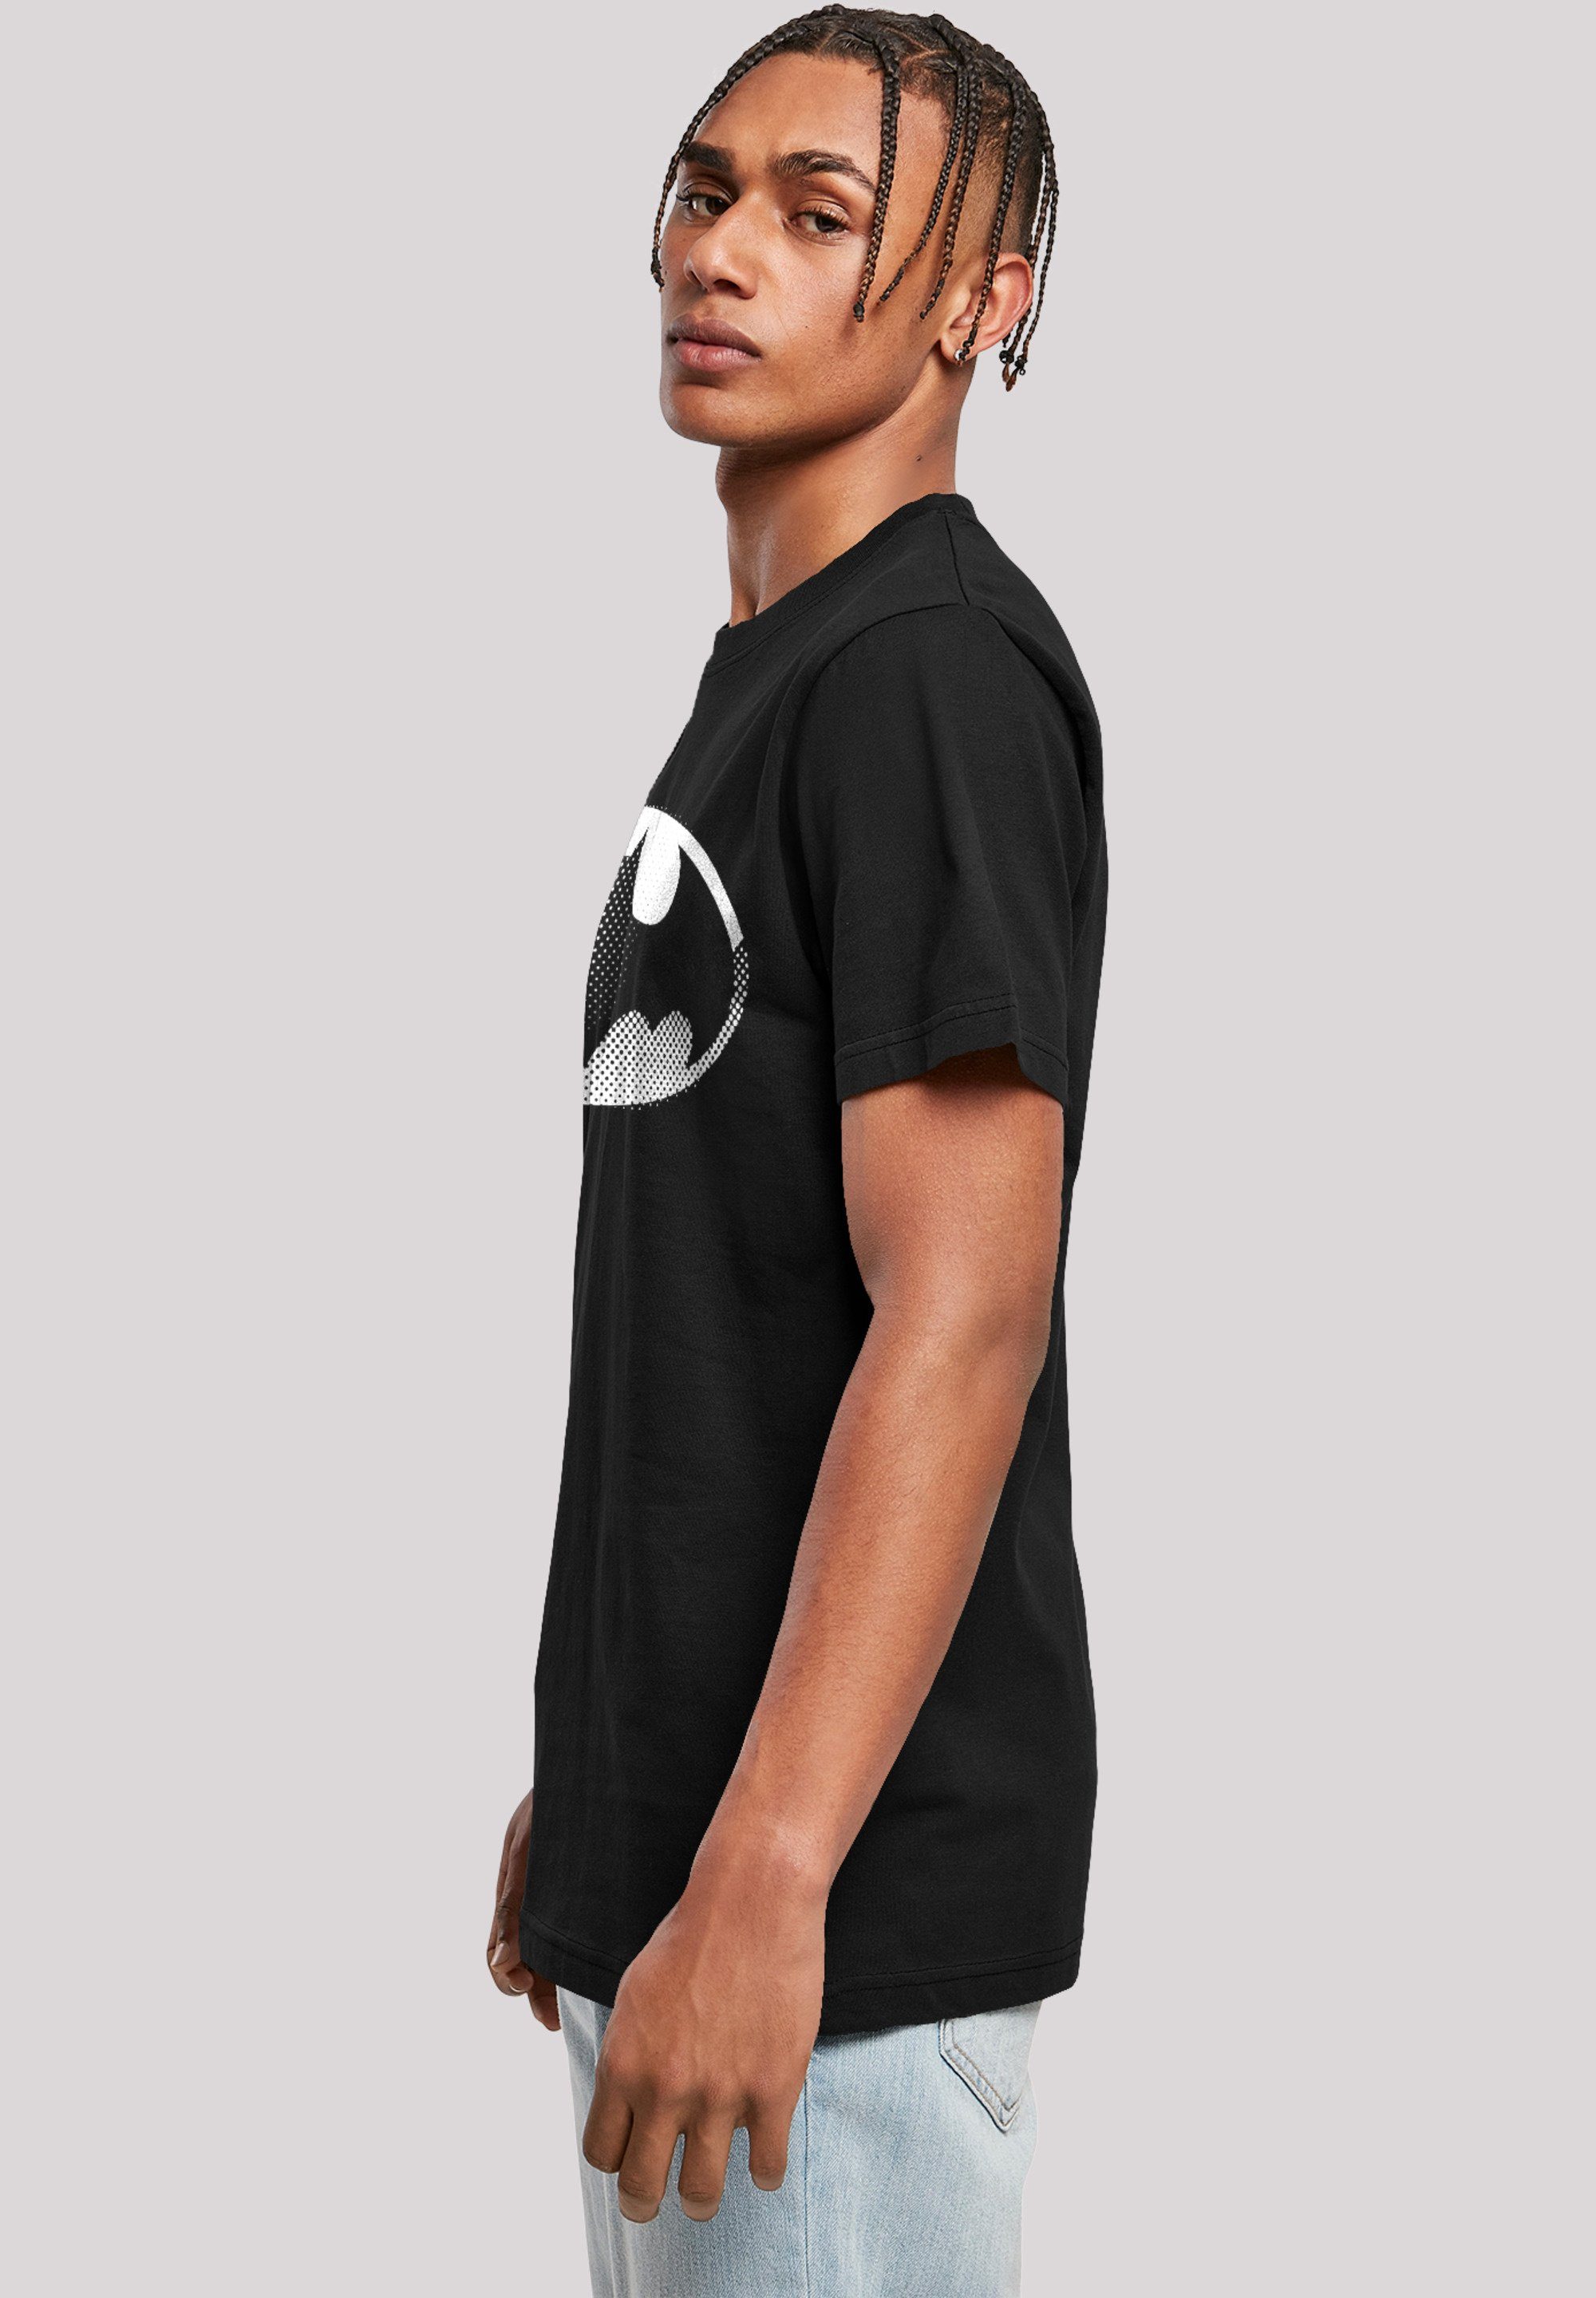 F4NT4STIC T-Shirt DC Merch,Regular-Fit,Basic,Bedruckt Batman Logo Comics Herren,Premium Spot